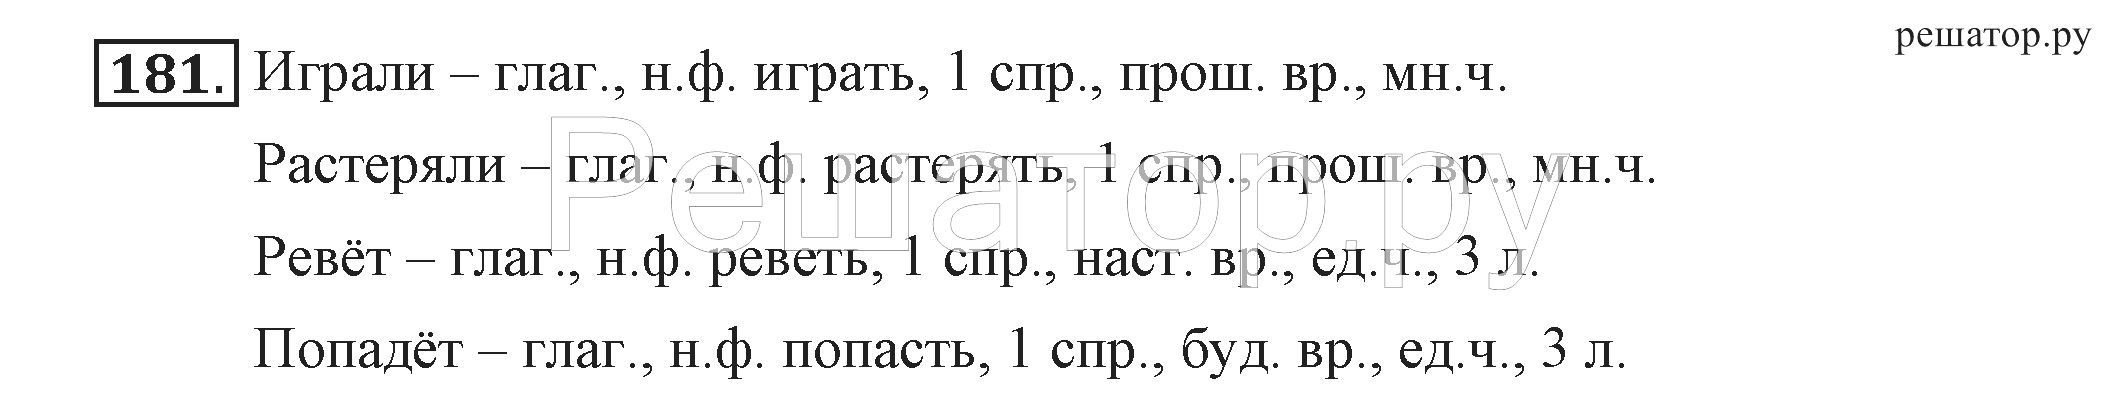 Русский язык стр 106 упр 181. Русский язык 4 класс 1 часть стр 102 упр 181.